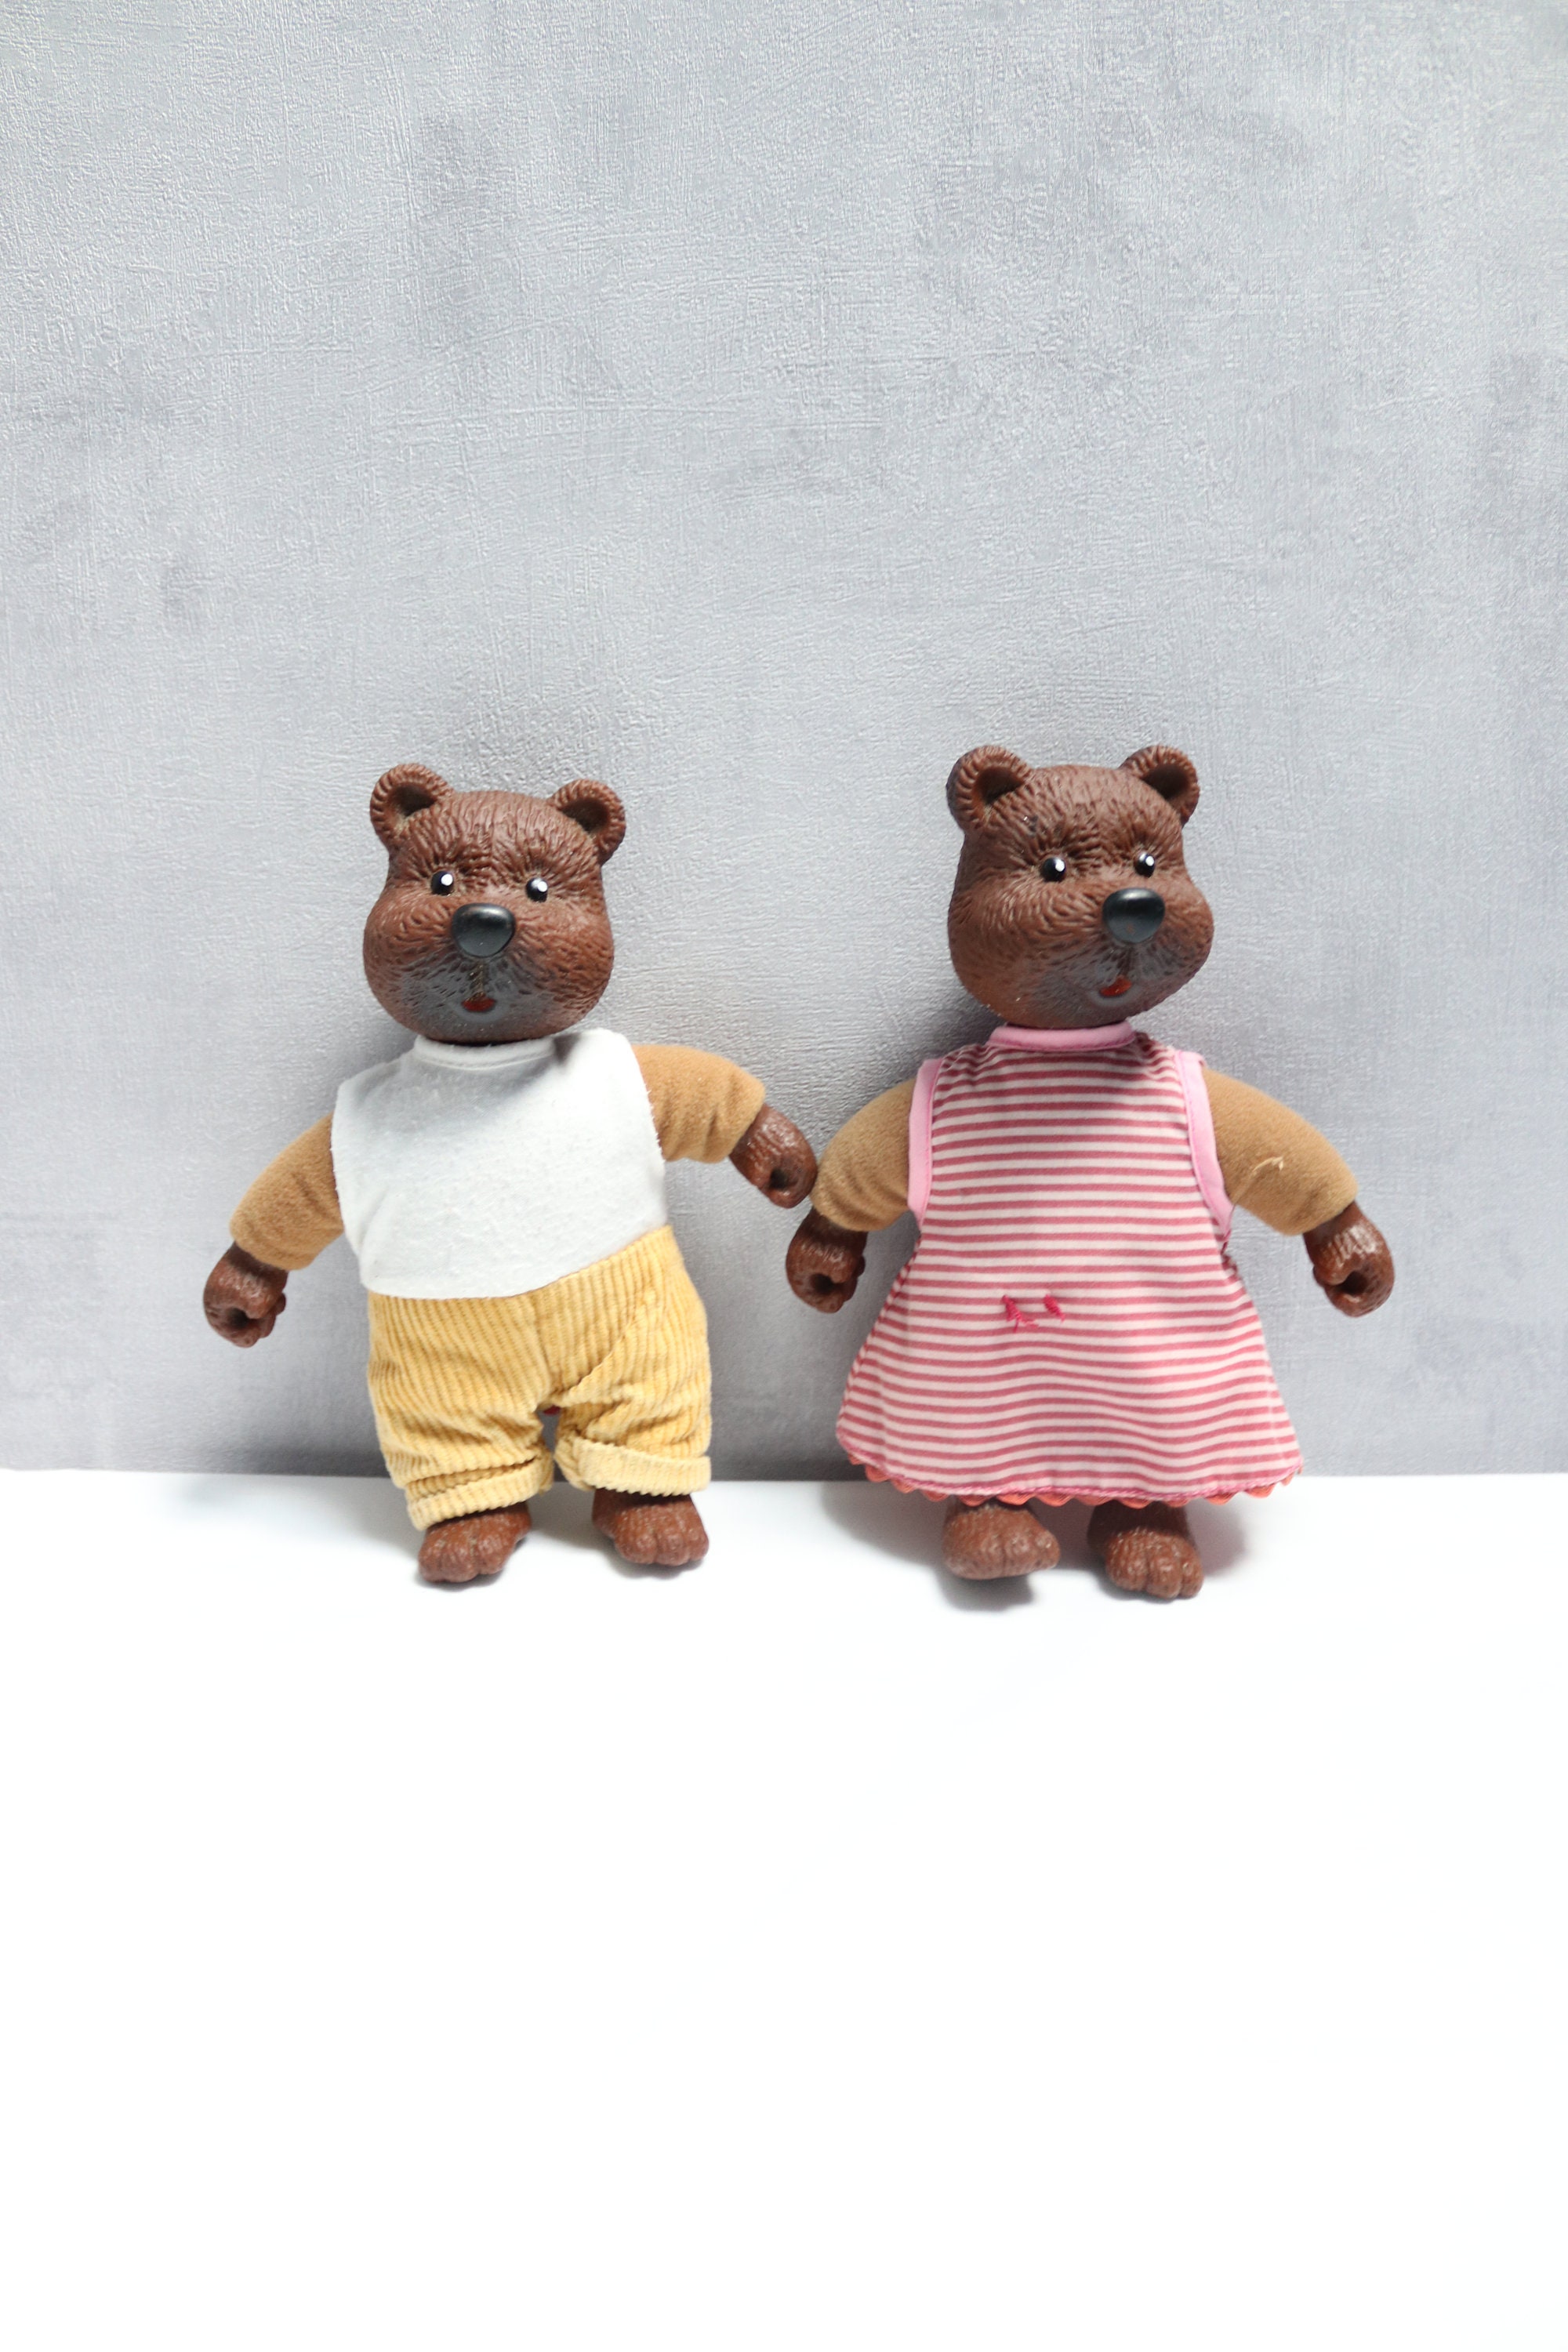 couple d'ours en peluche, pour mariage exclusivité nappes en fete